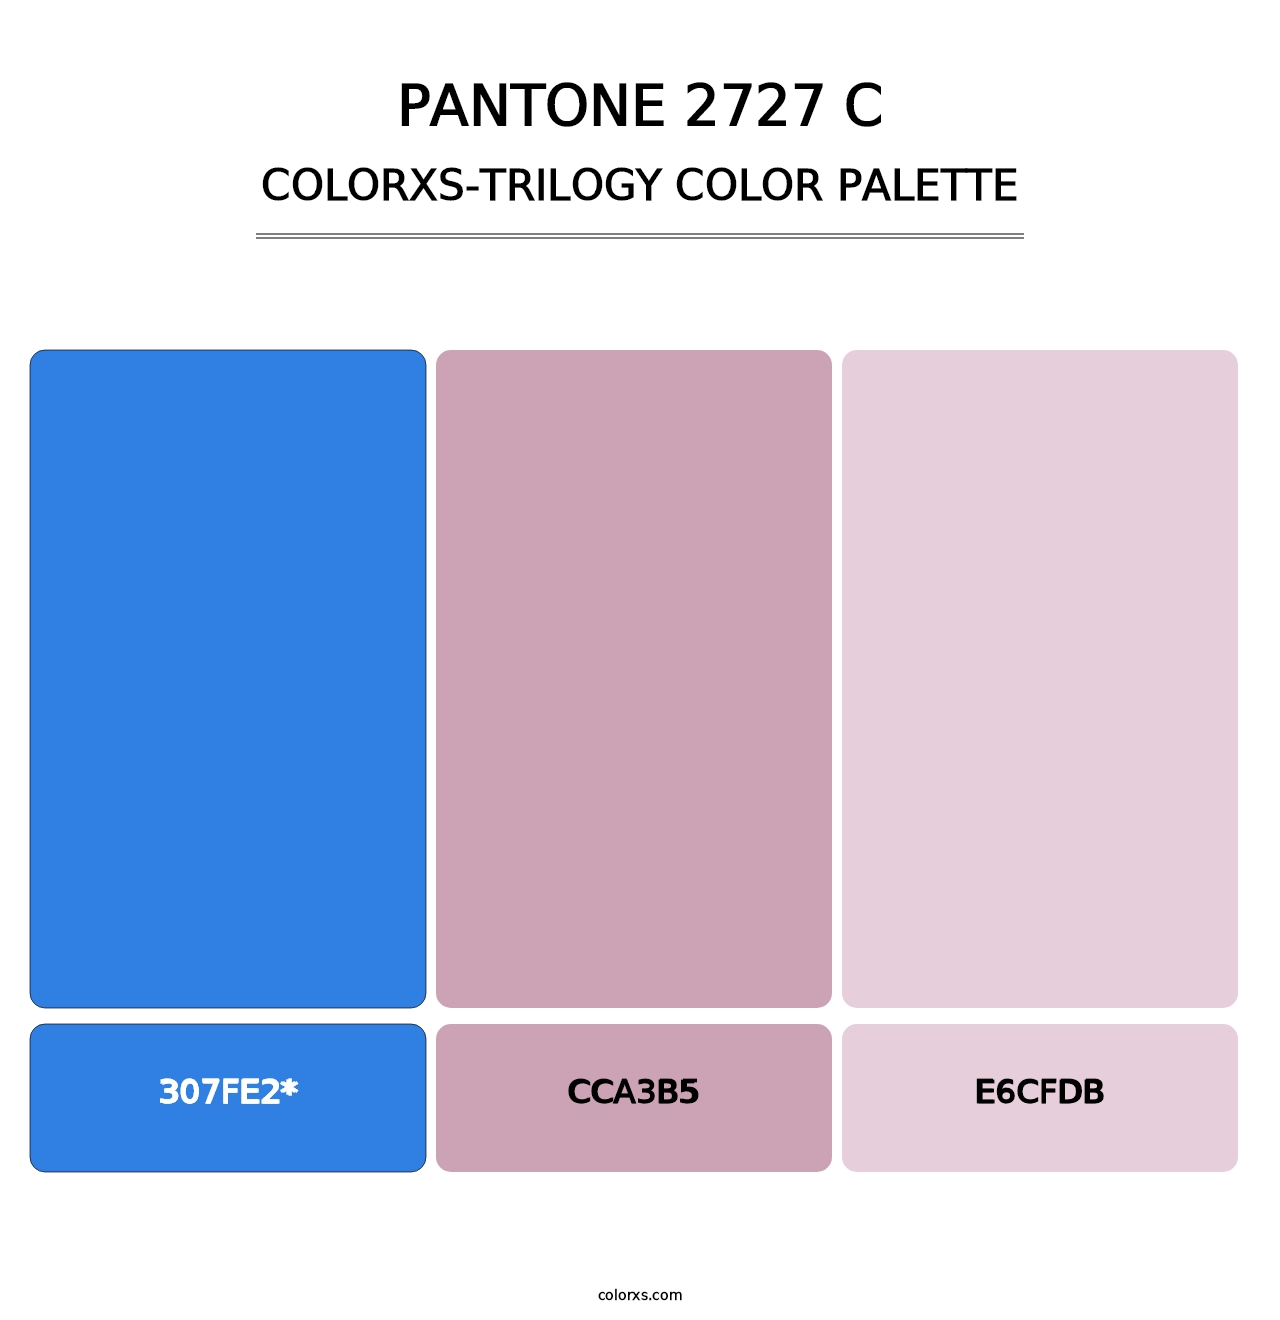 PANTONE 2727 C - Colorxs Trilogy Palette